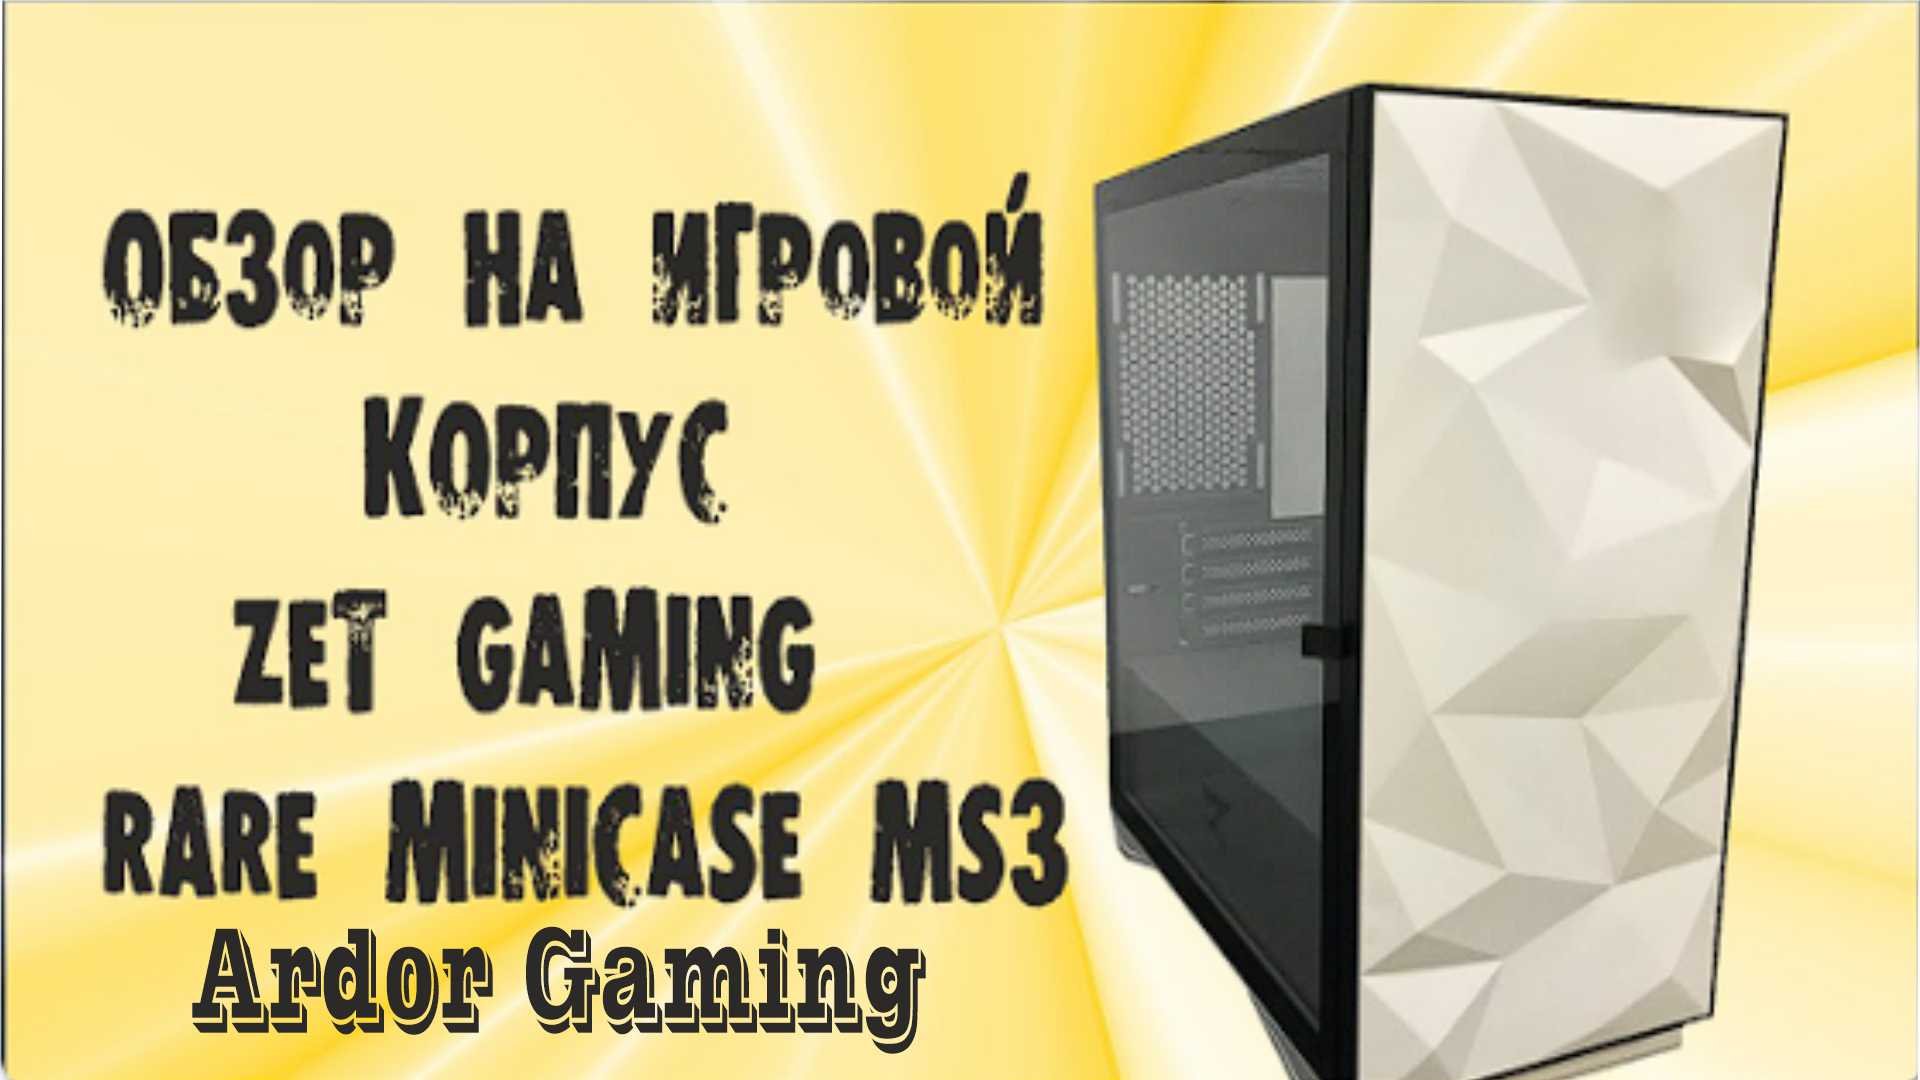 Корпус ardor gaming rare ms3. Корпус zet ms3. Zet Gaming rare Mini Case ms3. Корпус zet Gaming rare Minicase ms1. Корпус zet Gaming rare Minicase ms3 Mesh WG ARGB.